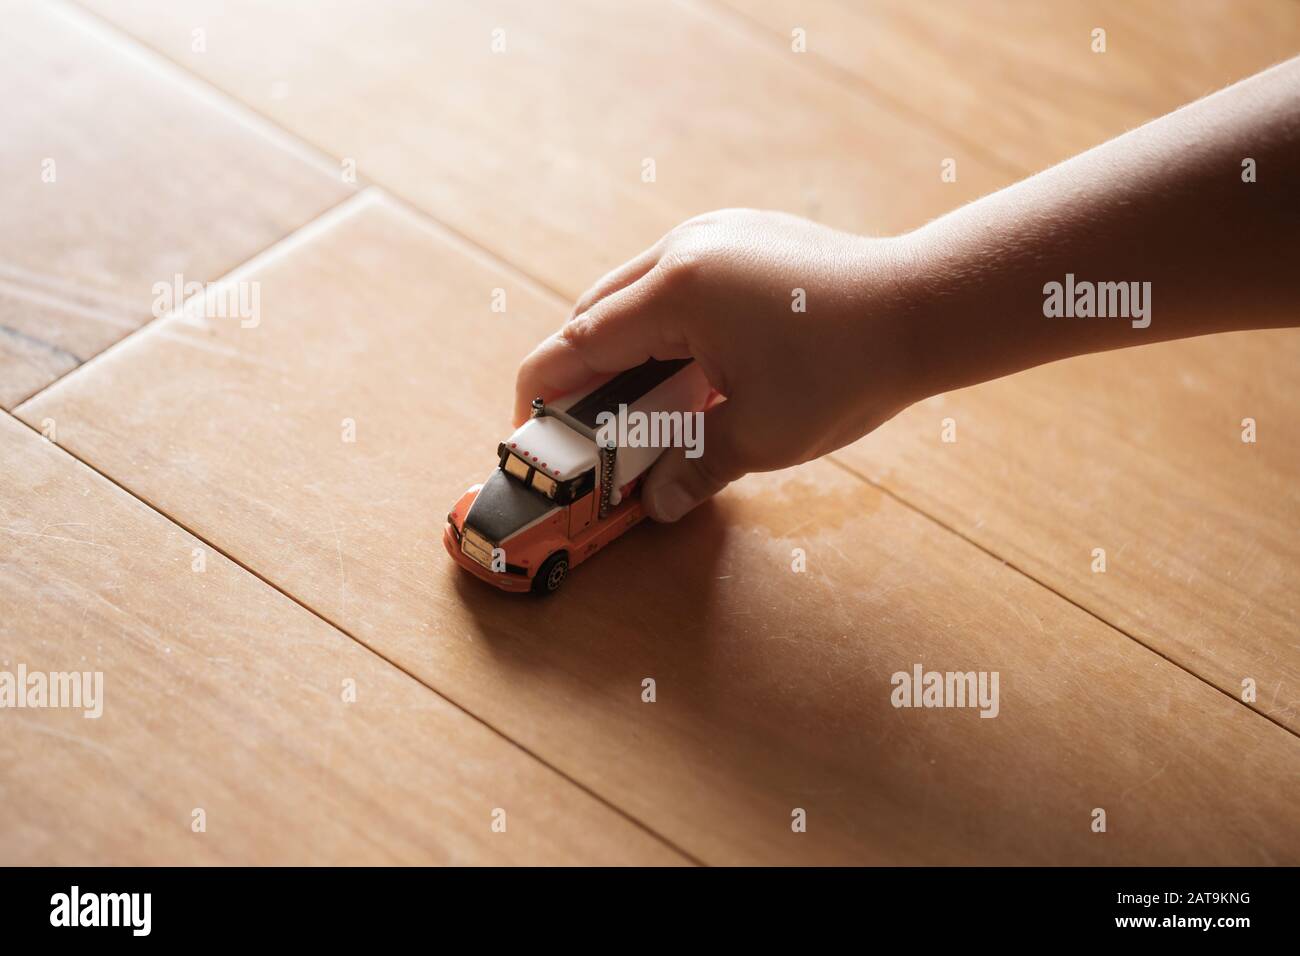 Un enfant d'âge préscolaire jouant à la main avec un camion de jouets sur un plancher de bois, jeu imaginatif Banque D'Images